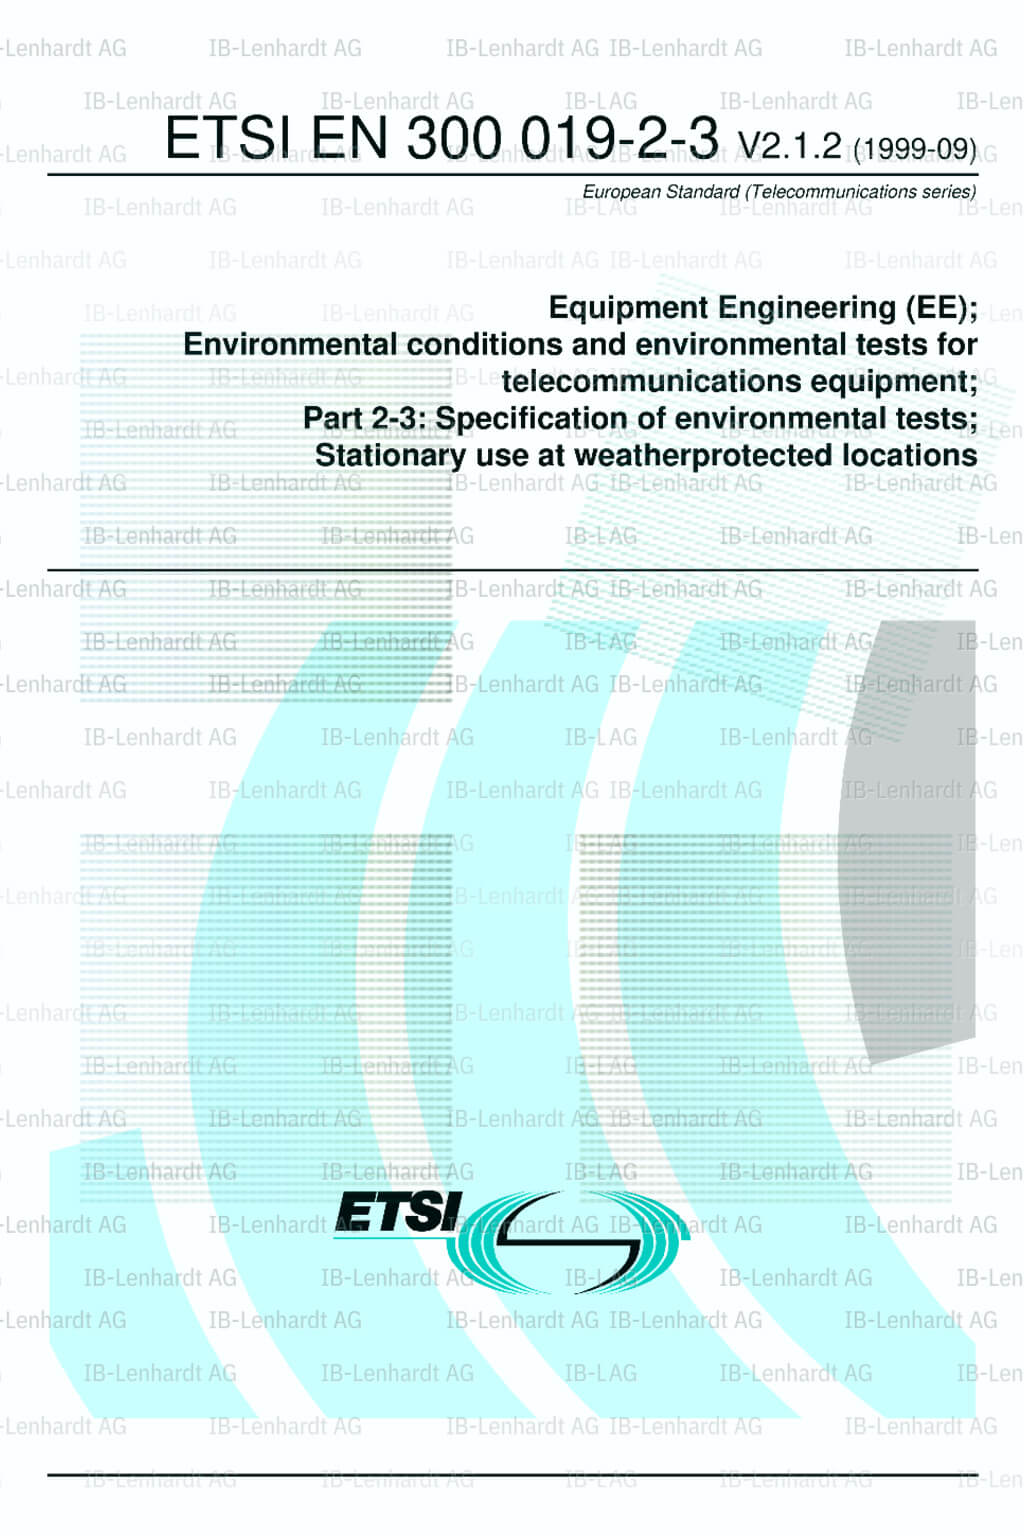 ETSI EN 300 019-2-3 V2.1.2 